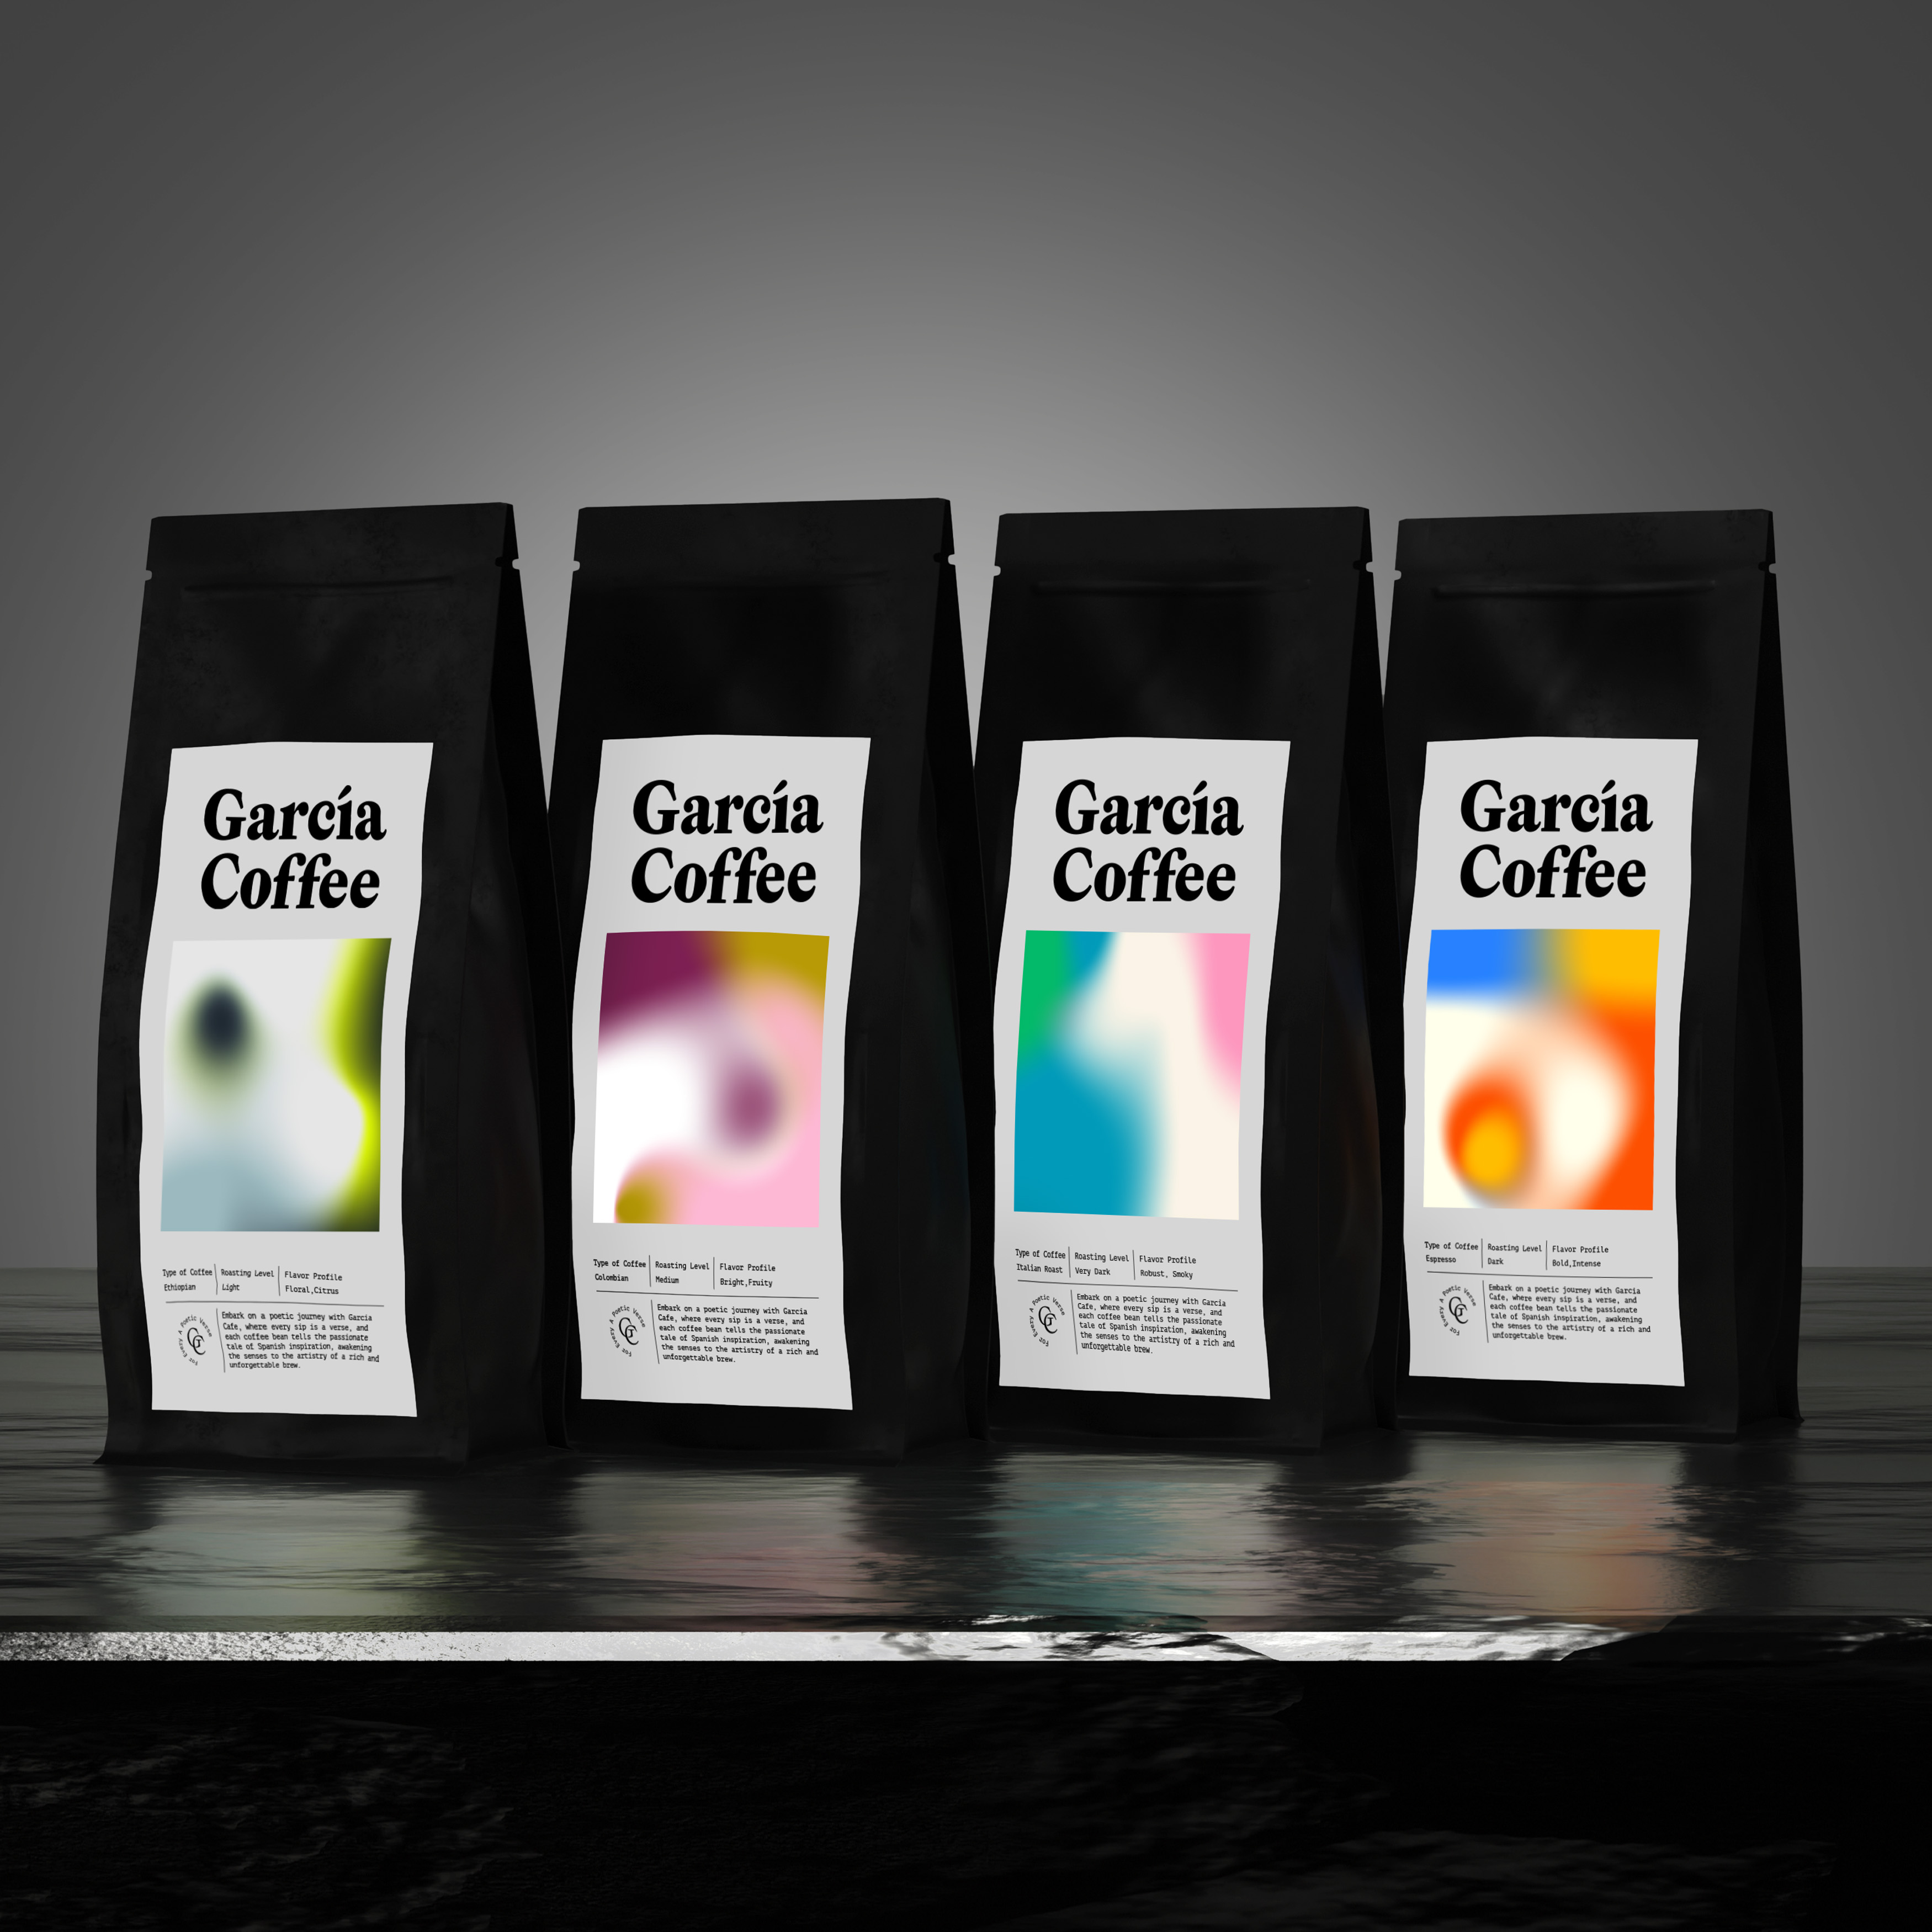 Garcia Coffee Packaging Design